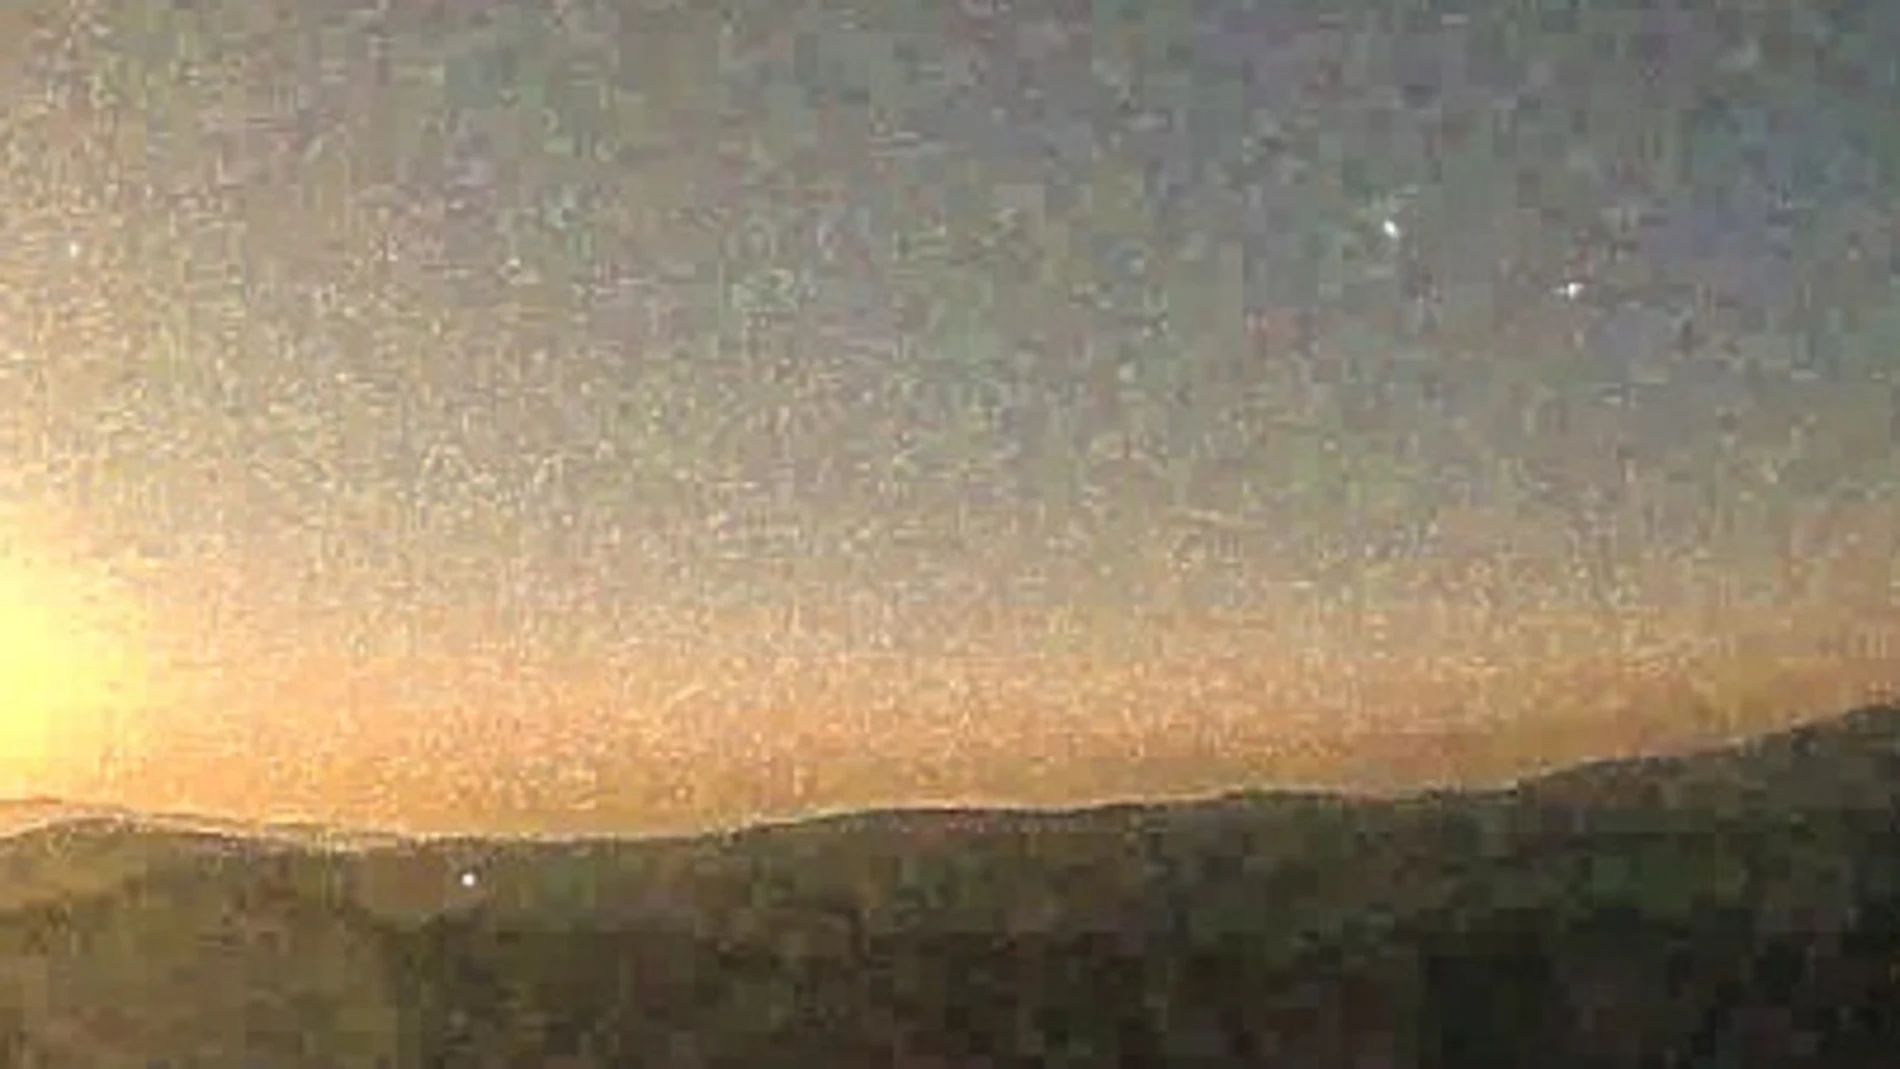 La bola de fuego captada por el Observatorio de Calar Alto